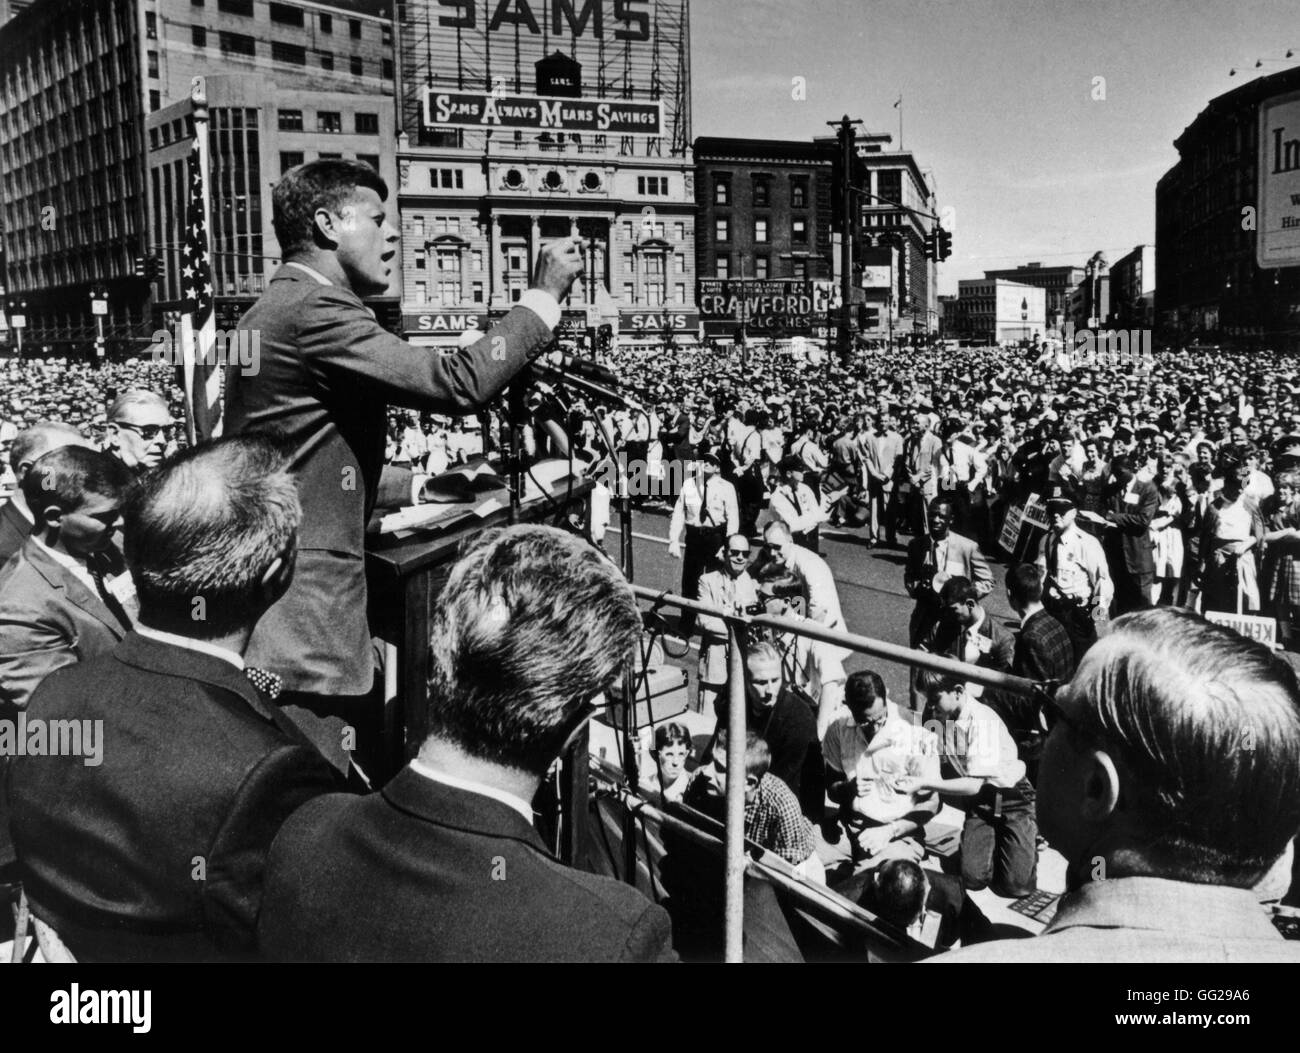 Premier lundi de septembre, fête du Travail, 1960, Detroit, Michigan. Le sénateur John Kennedy, candidat du Parti démocrate à la présidence, est un discours à la foule. Septembre 1960 United States National archives. Washington Banque D'Images